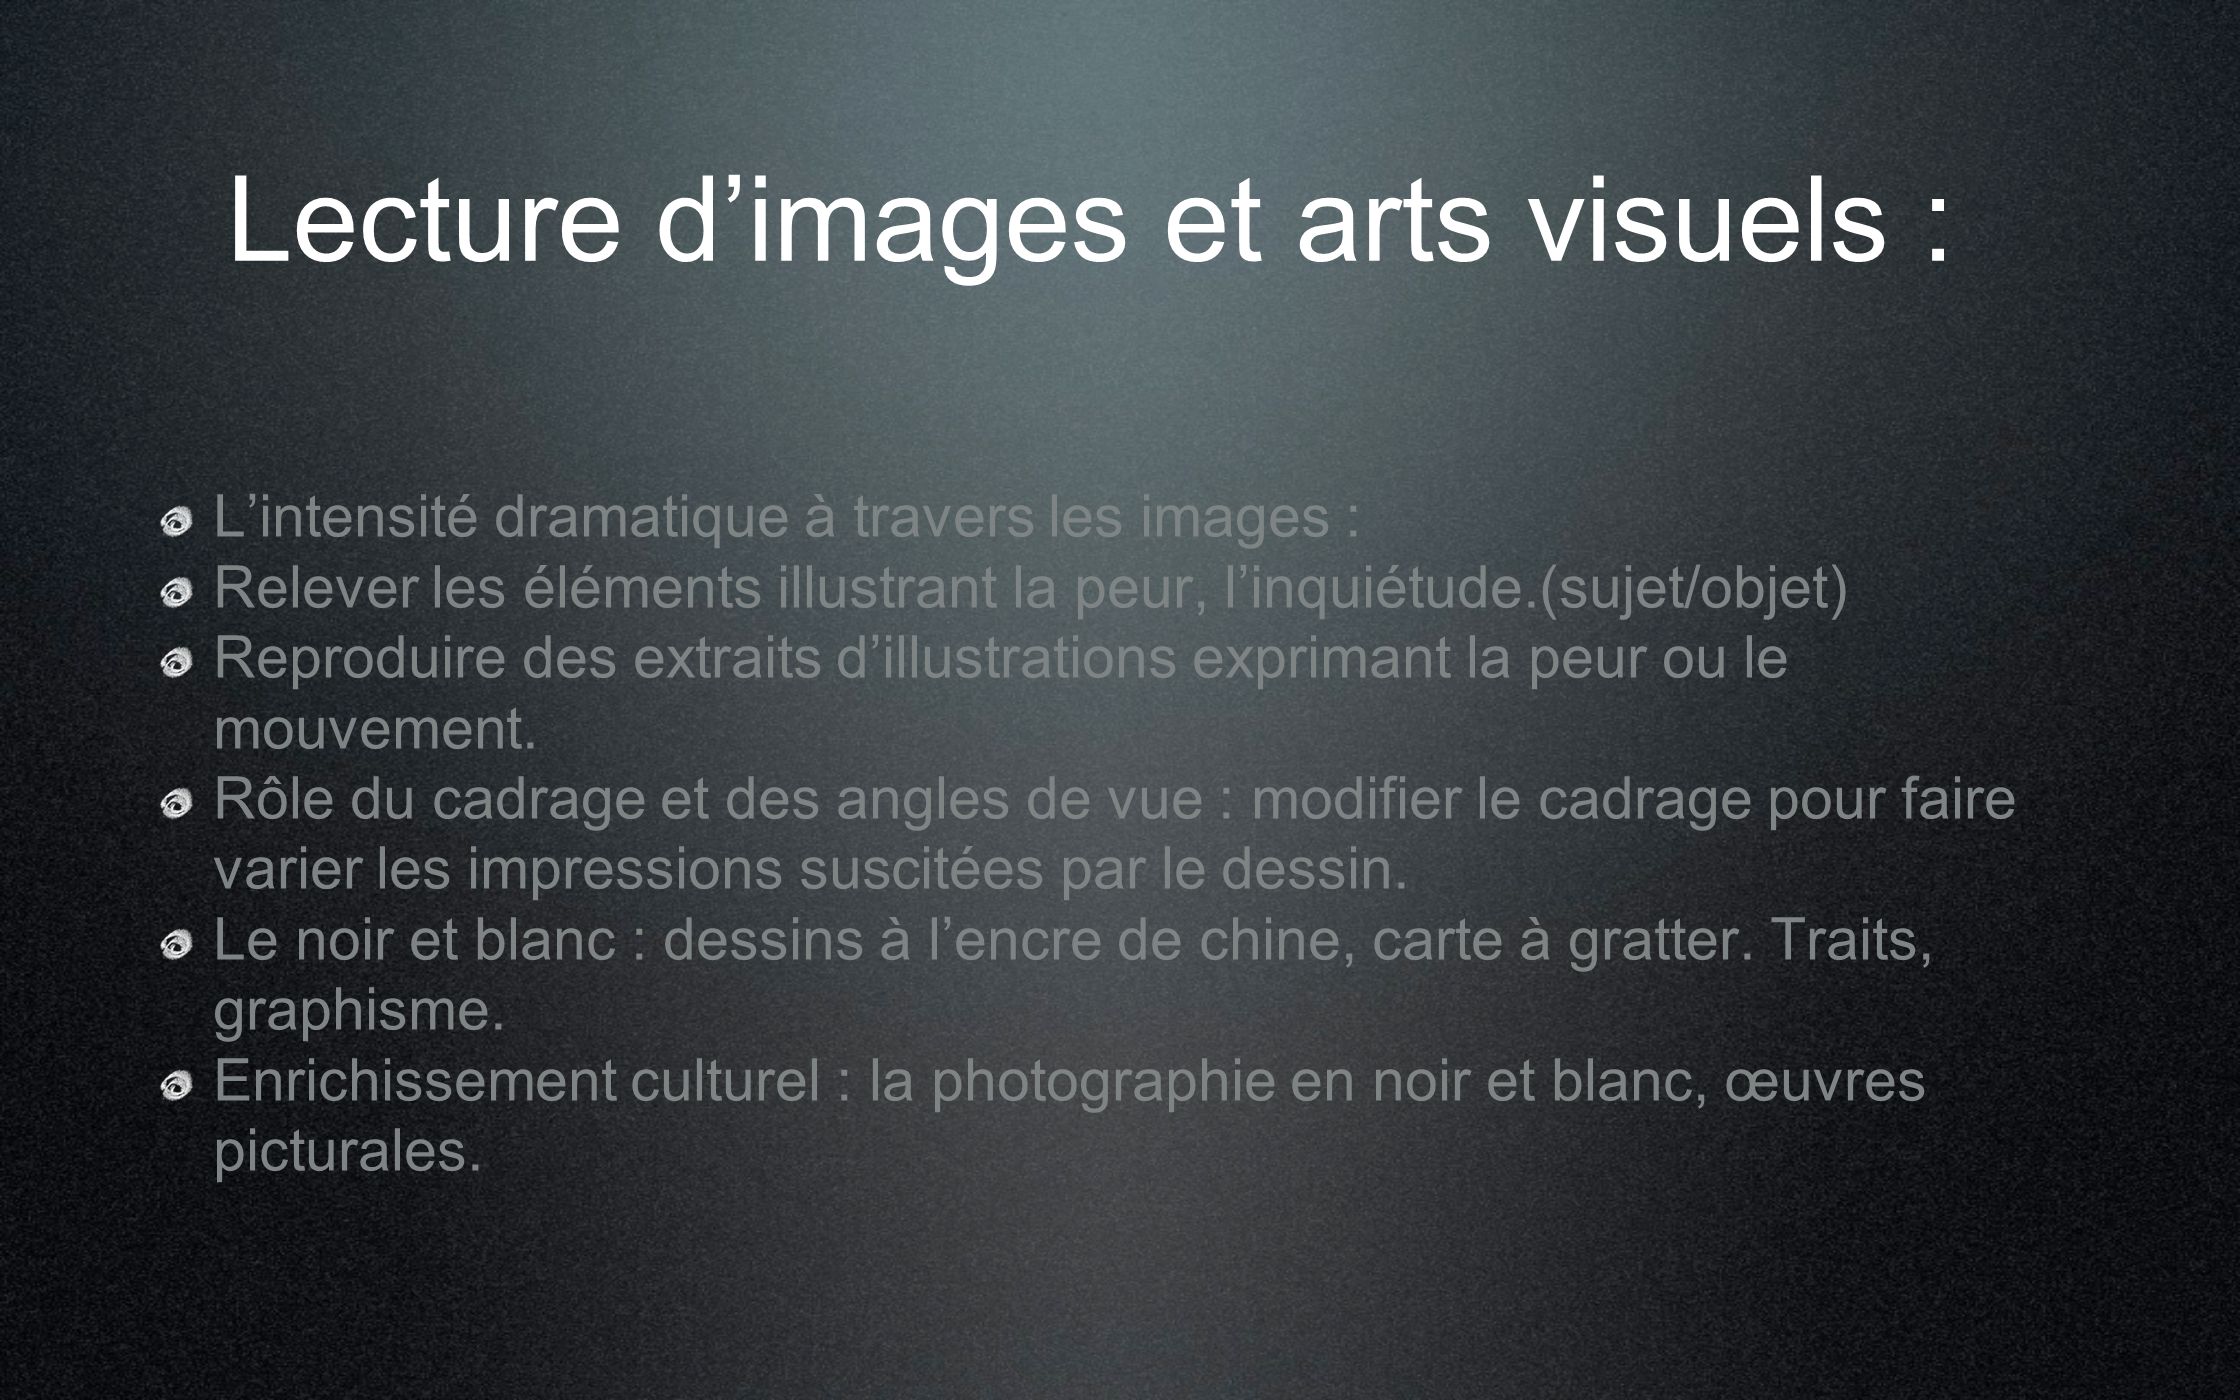 Lecture d’images et arts visuels :